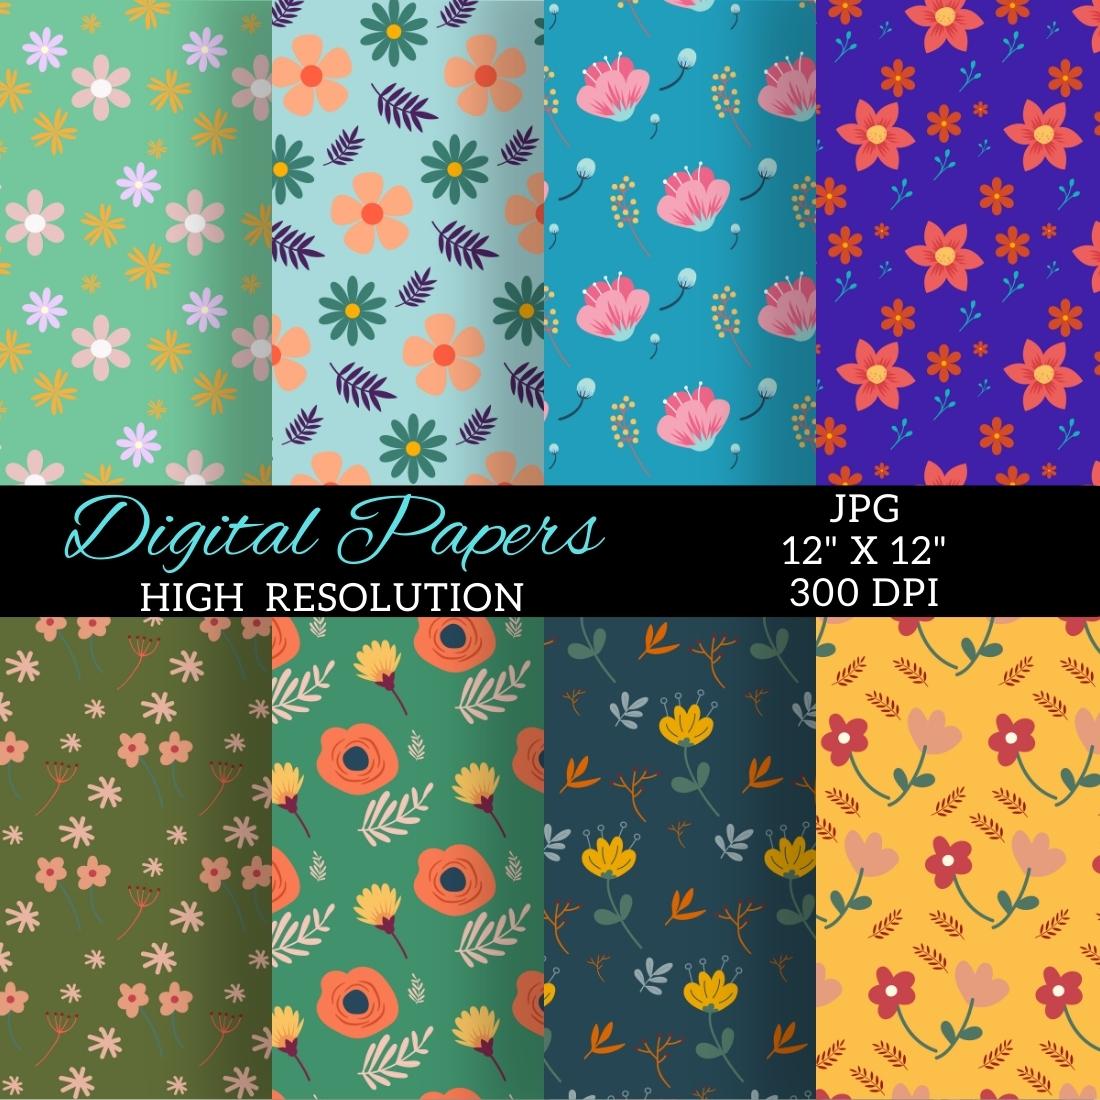 Floral Digital Paper Patterns Design cover image.